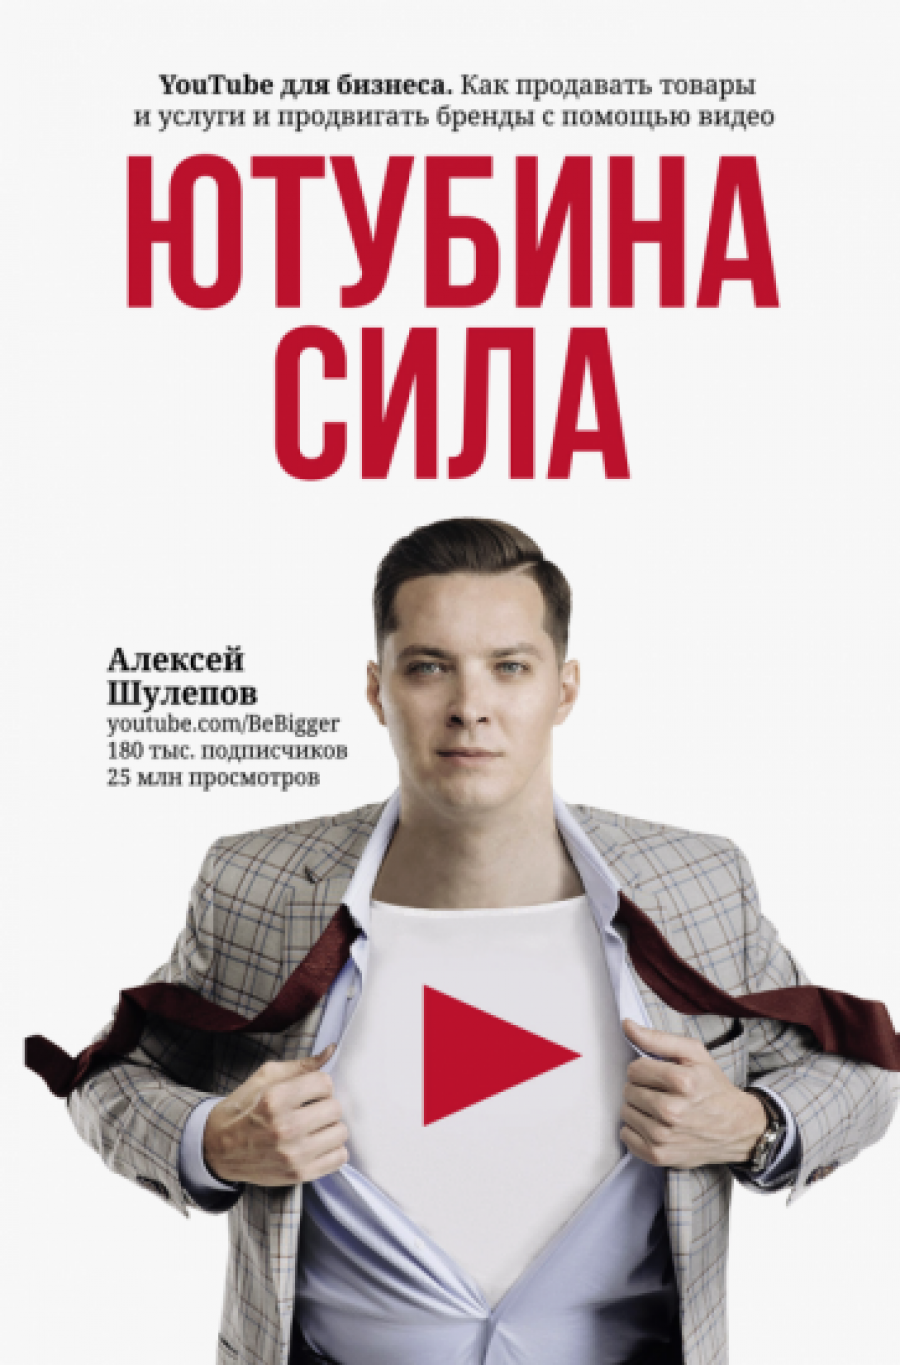 Шулепов А.В. Ютубина Сила. YouTube для бизнеса. Как продавать товары и услуги и продвигать бренды с помощью видео 